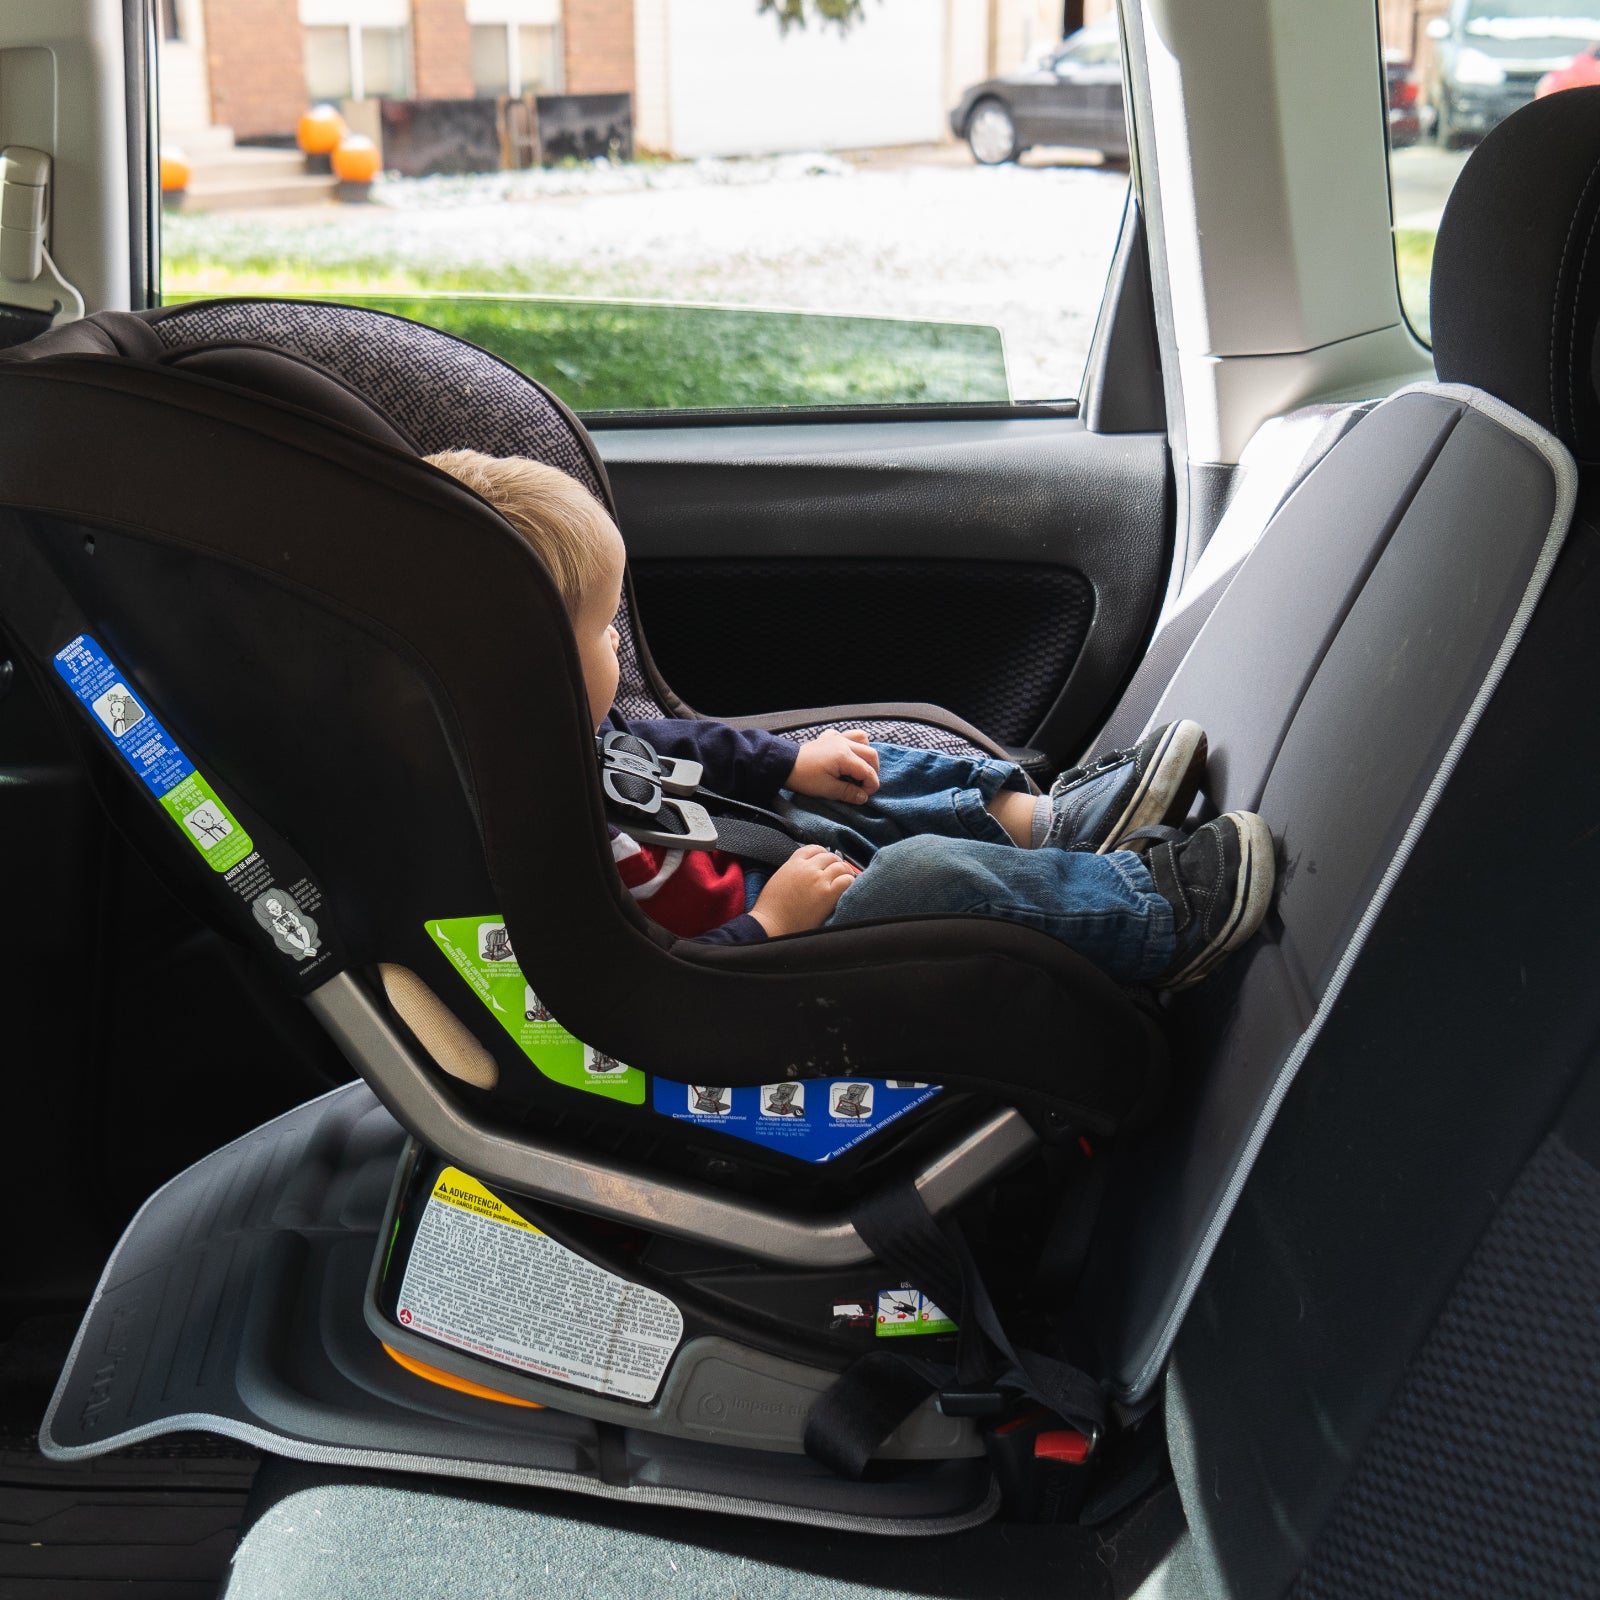 HEYTRIP® Car Seat Protector and Kick Mat